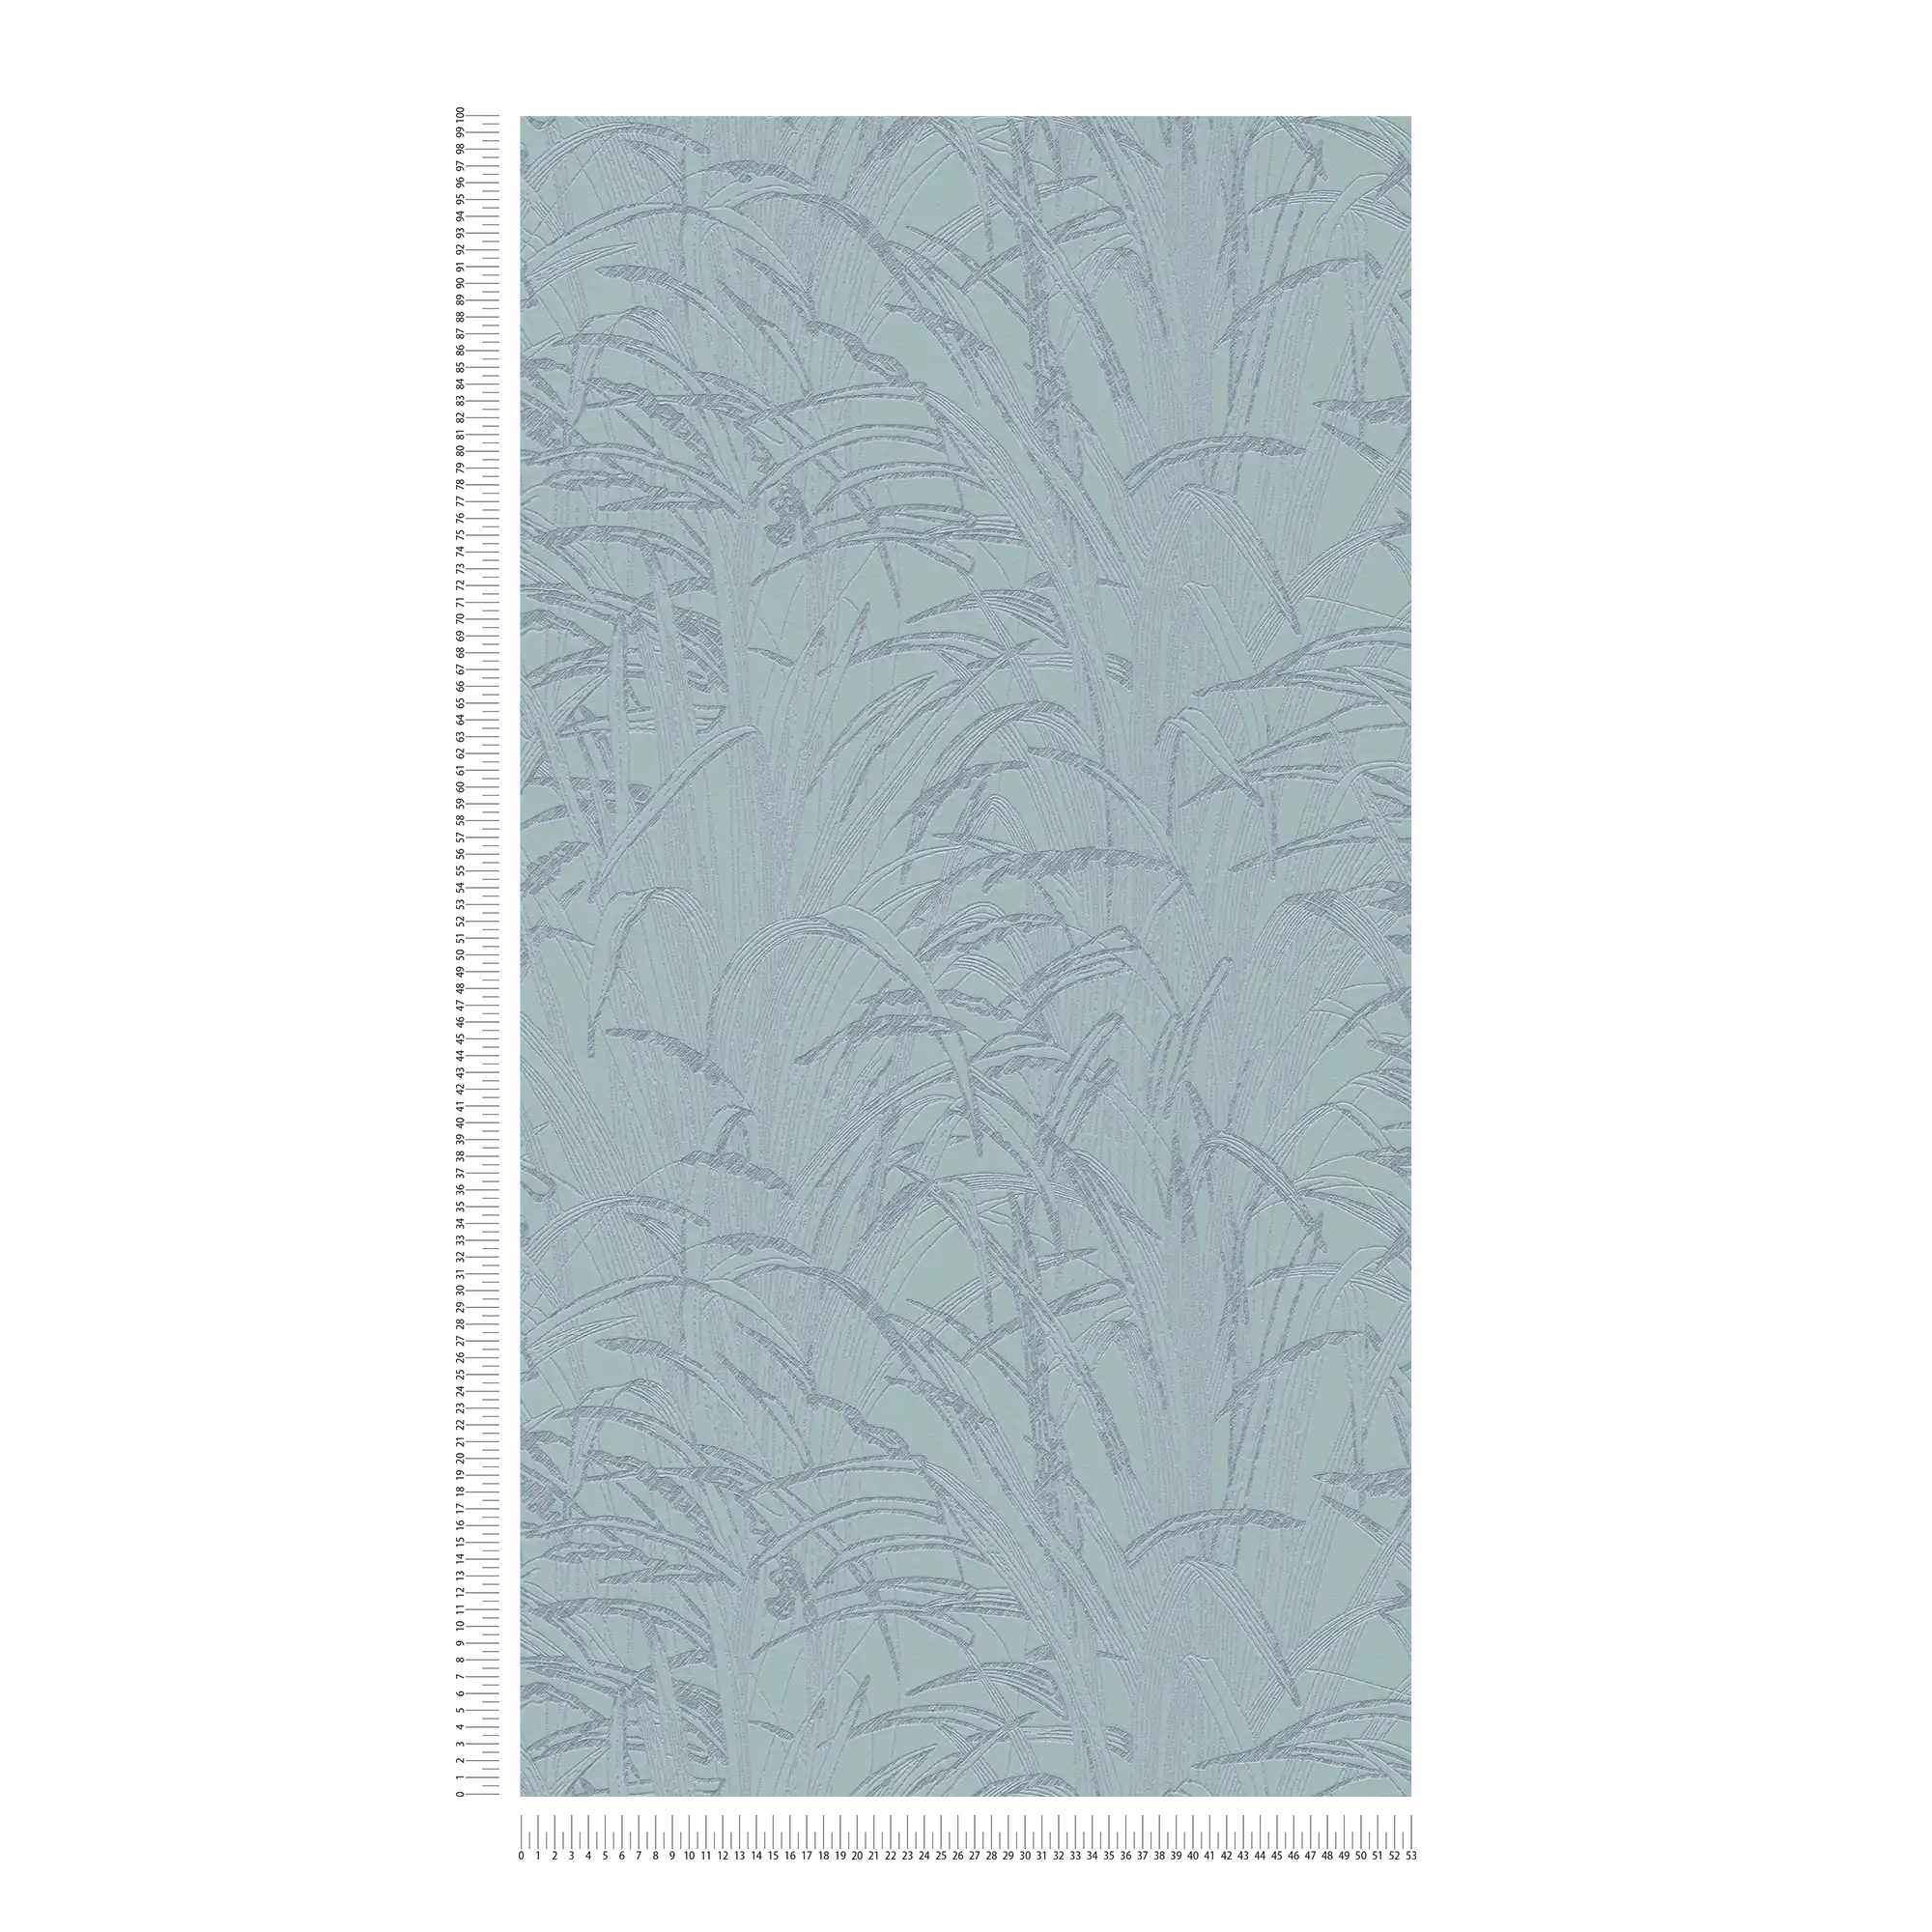             Bladeren behang metallic design - blauw, metallic
        